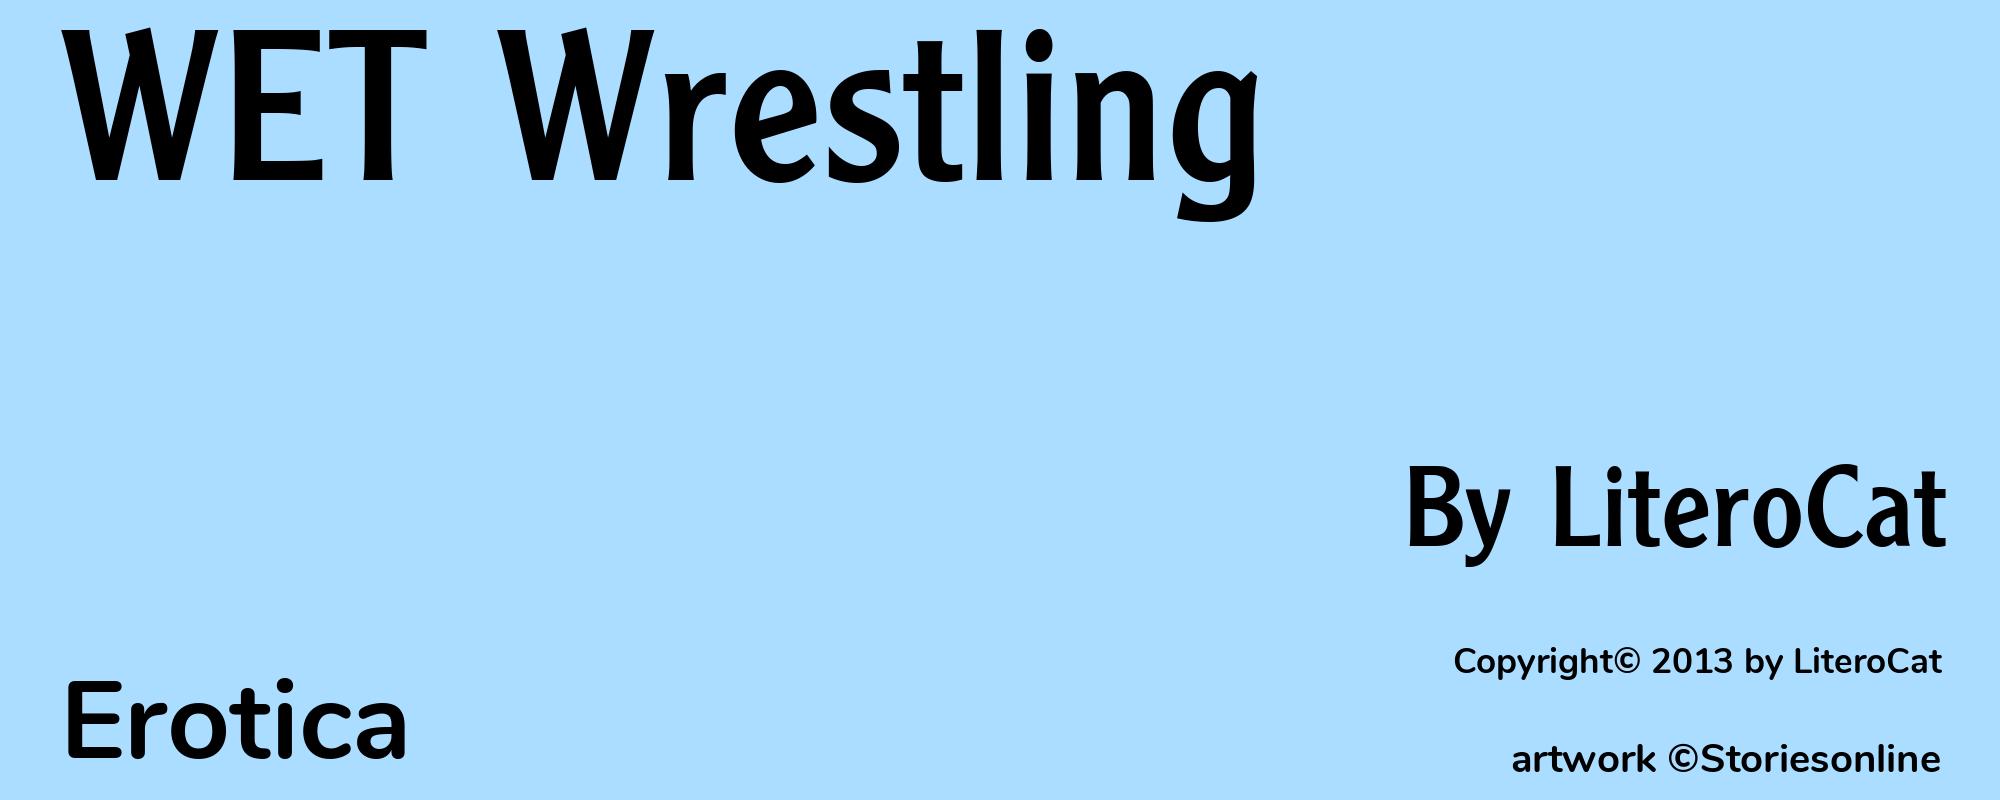 WET Wrestling - Cover